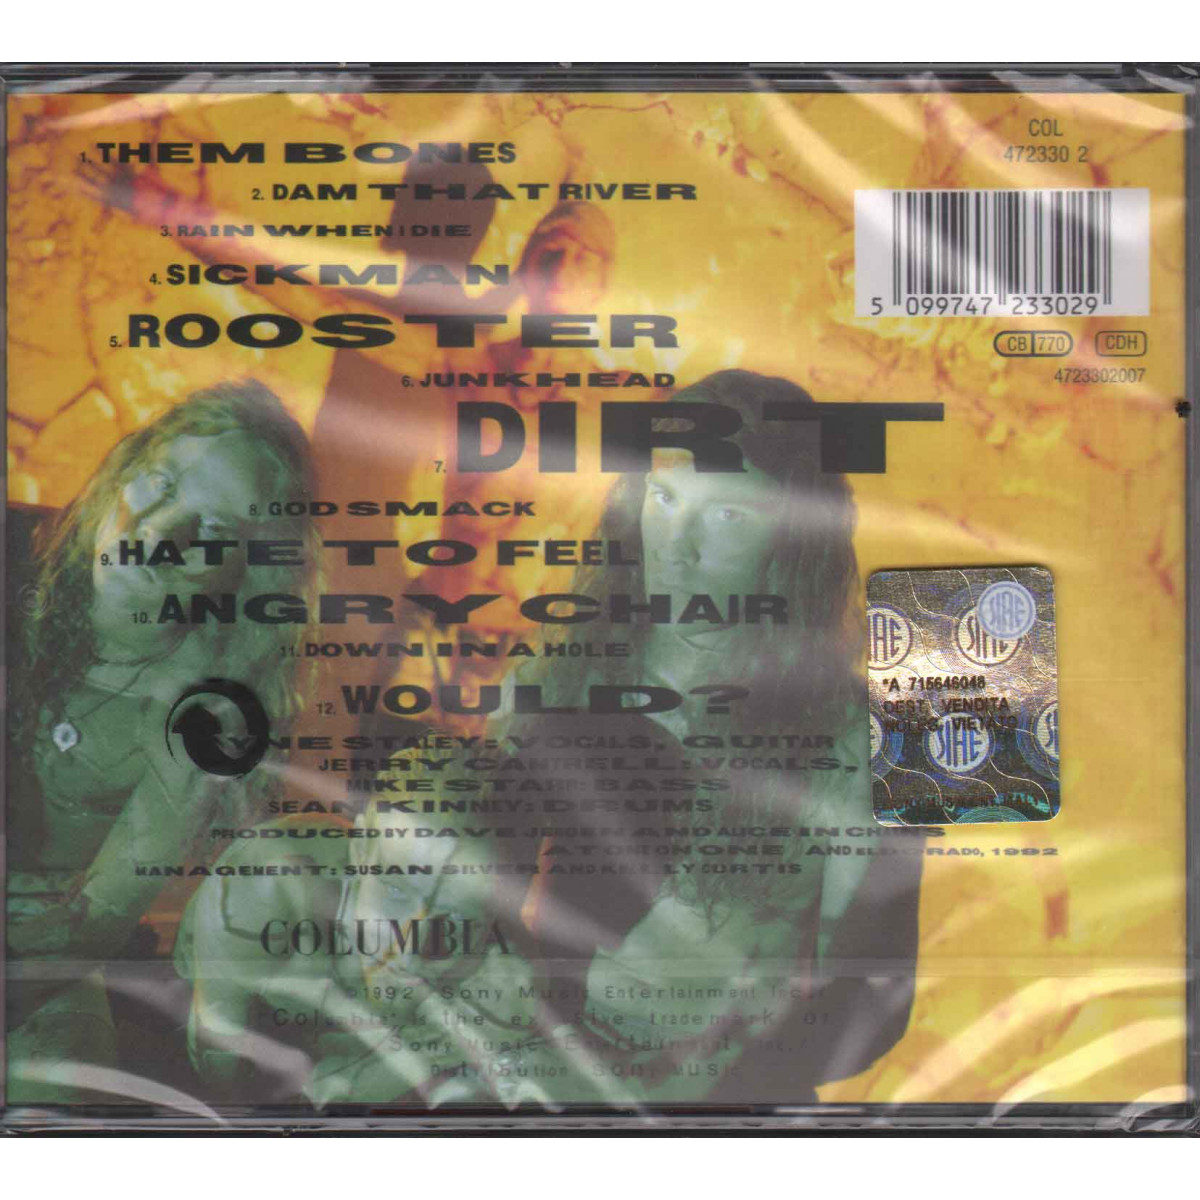 Alice In Chains CD Dirt / Columbia ‎COL 472330 2 Sigillato